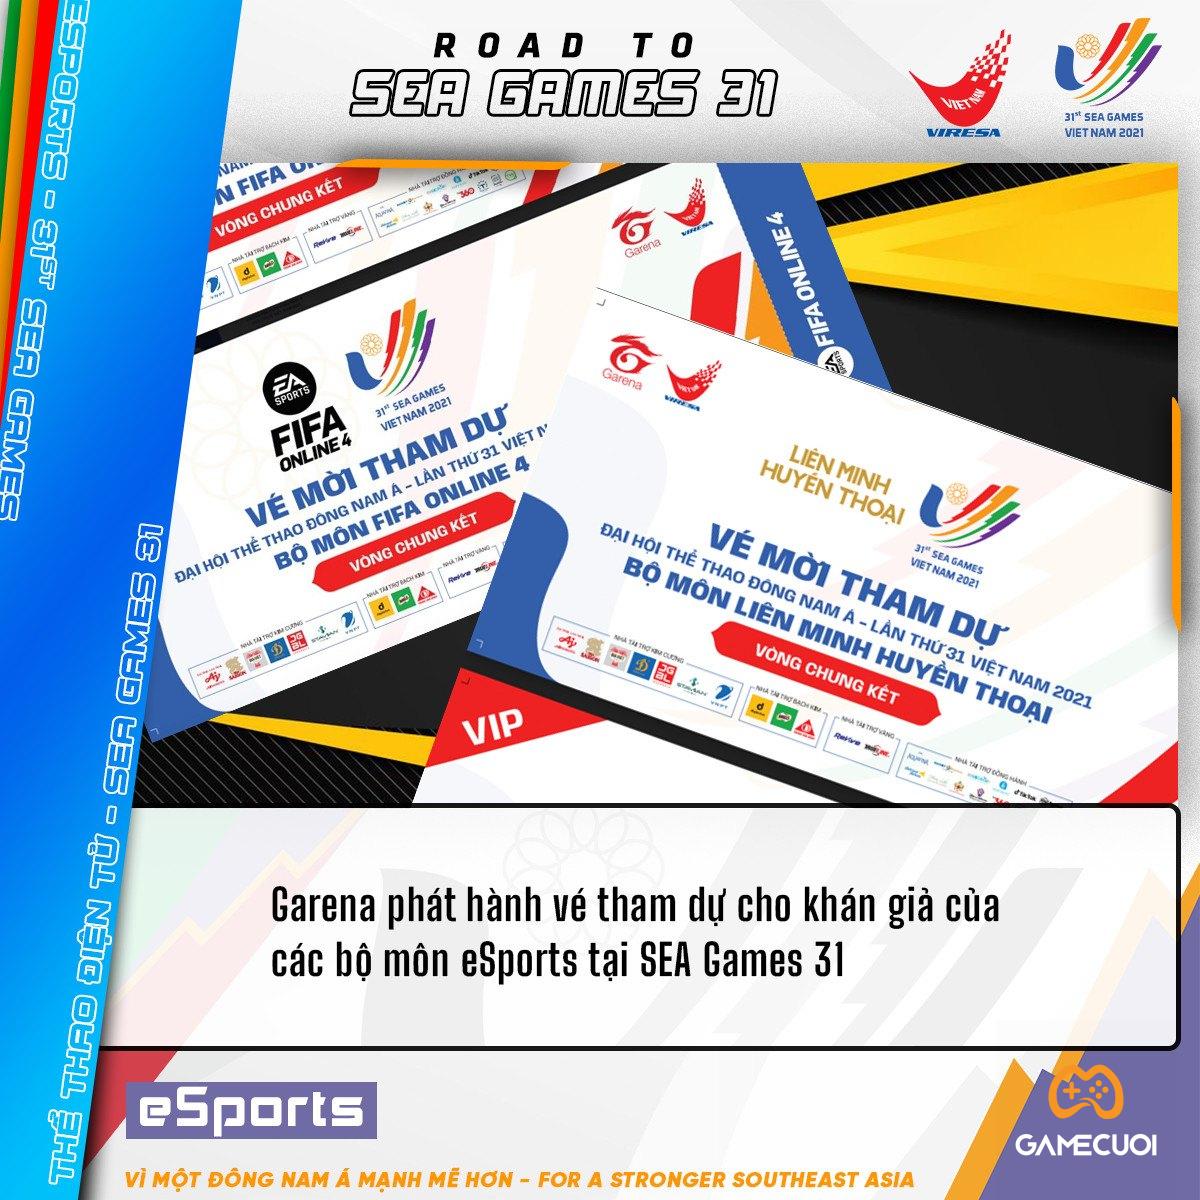 Địa điểm phát vé xem các bộ môn eSports tại SEA Games 31